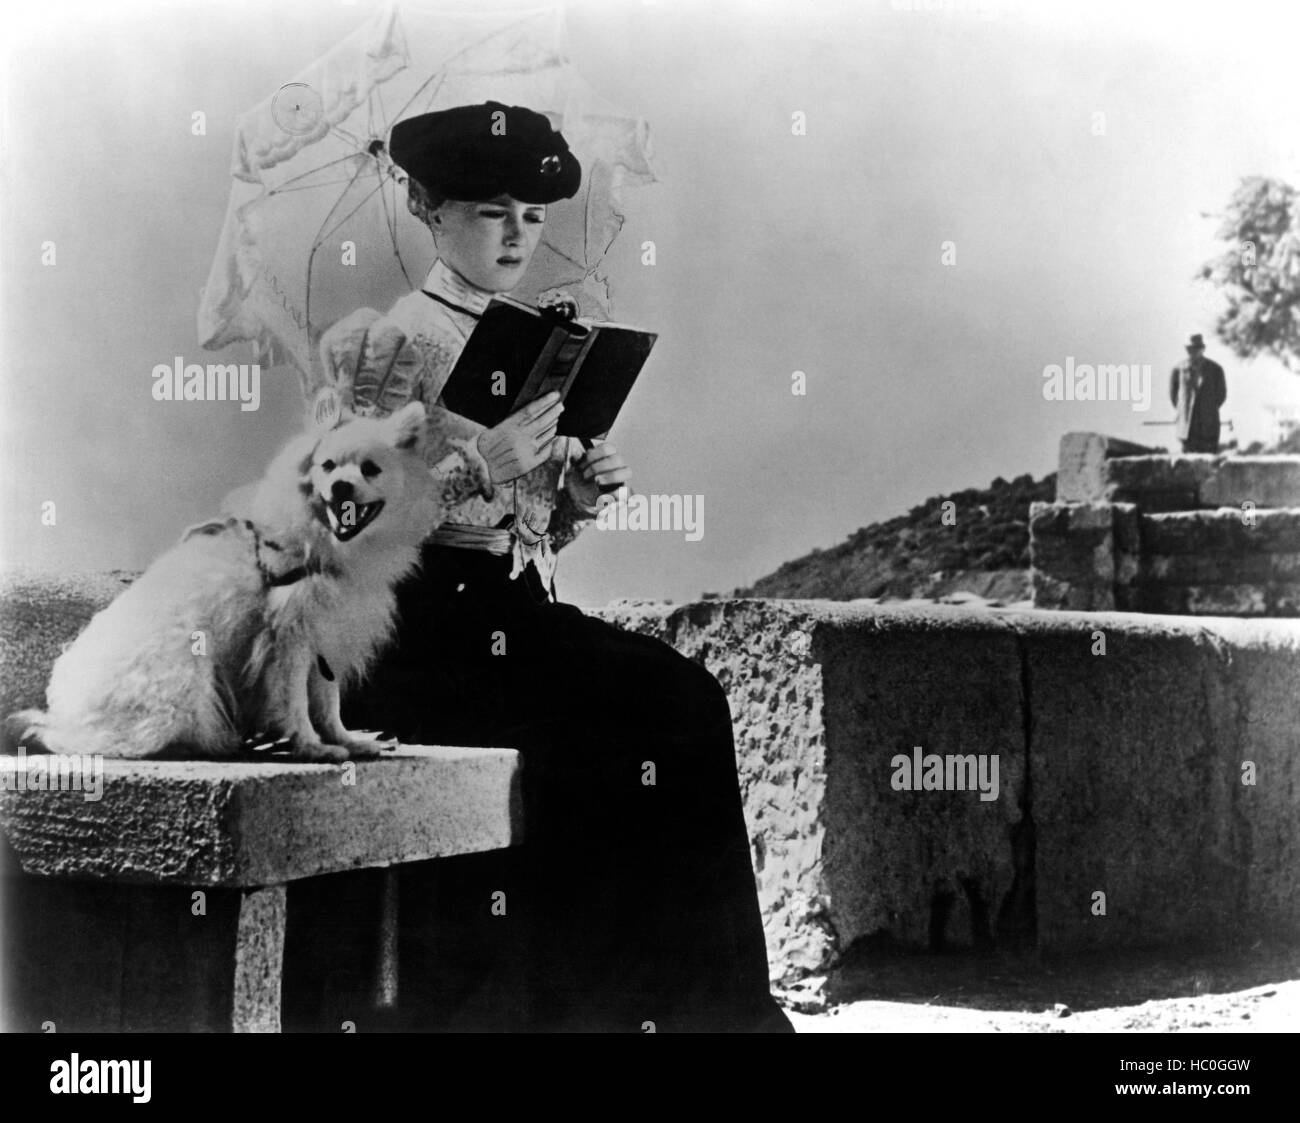 DIE Dame mit dem Hund, (aka DAMA S SOBACHKOY), Iya Savvina, 1960  Stockfotografie - Alamy